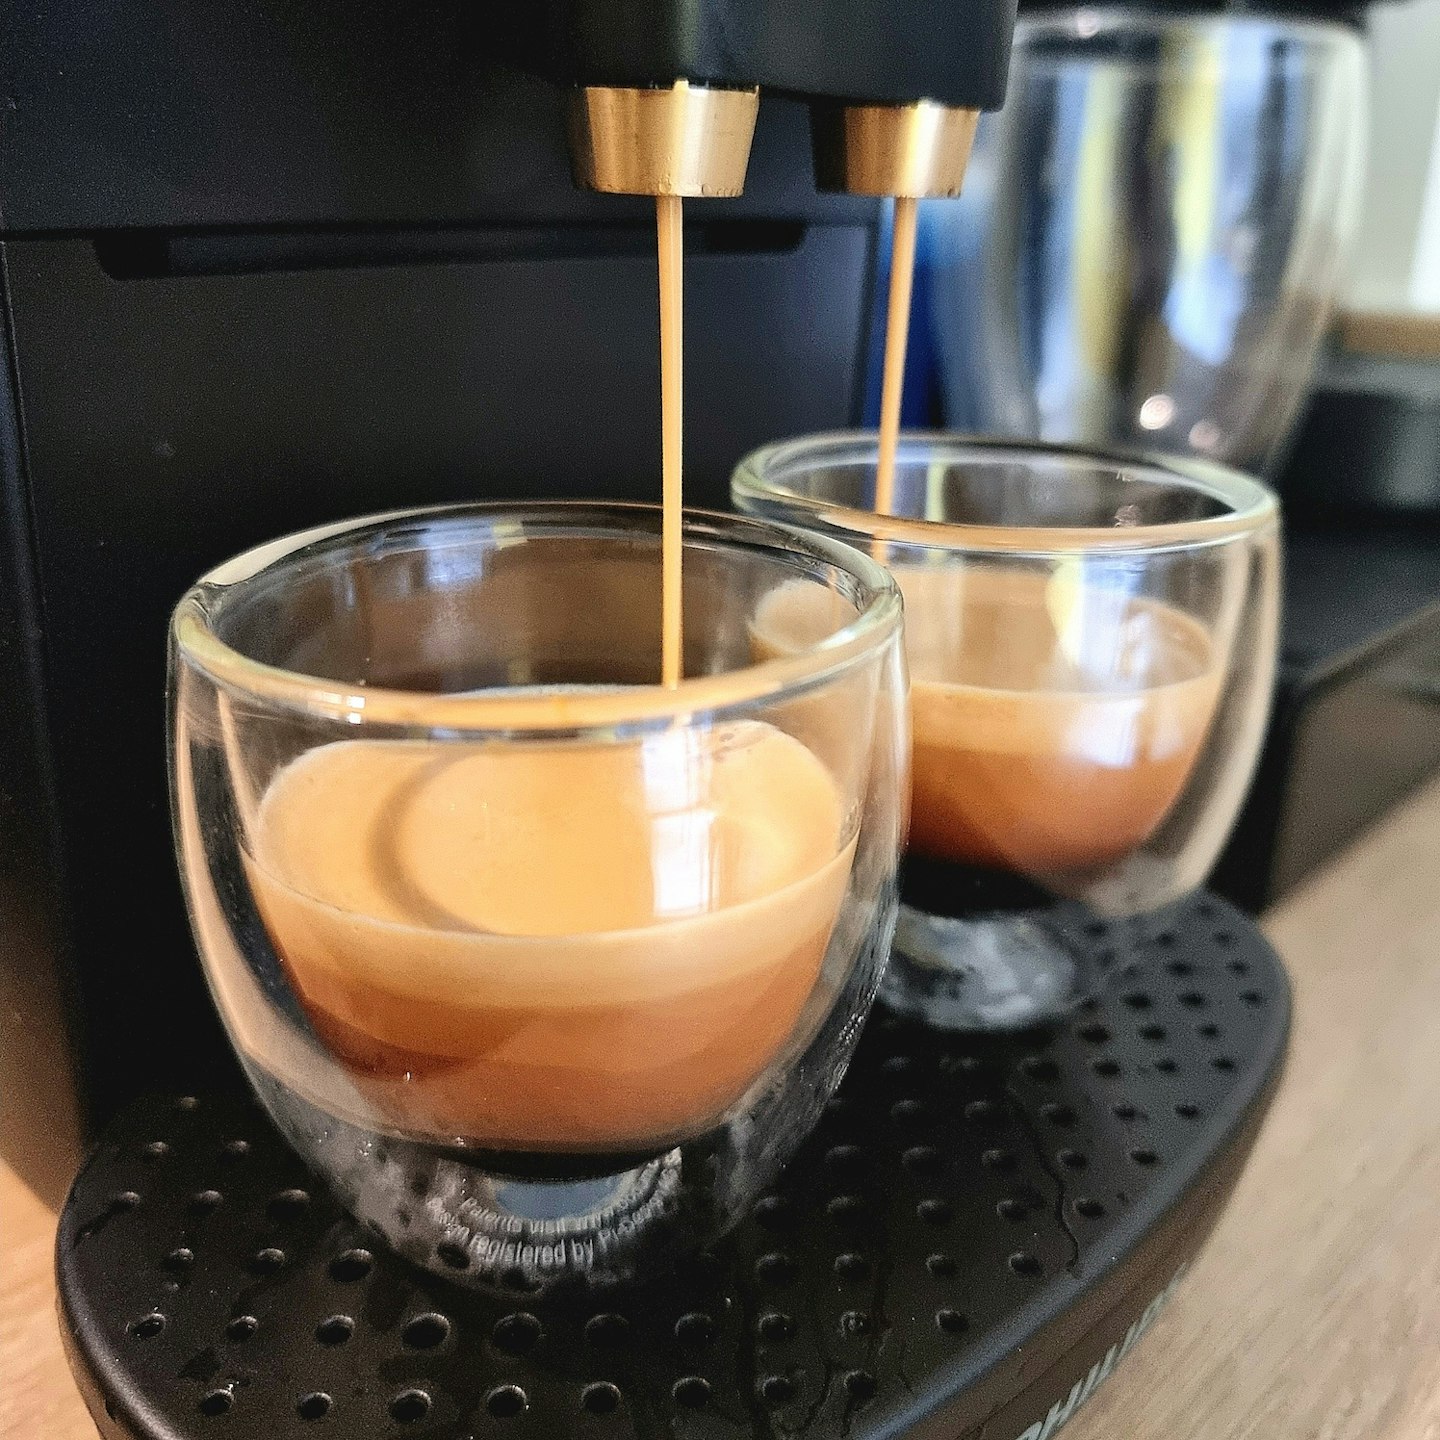 L'OR BARISTA Coffee & Espresso System - Satin Blanc | L'OR Coffee